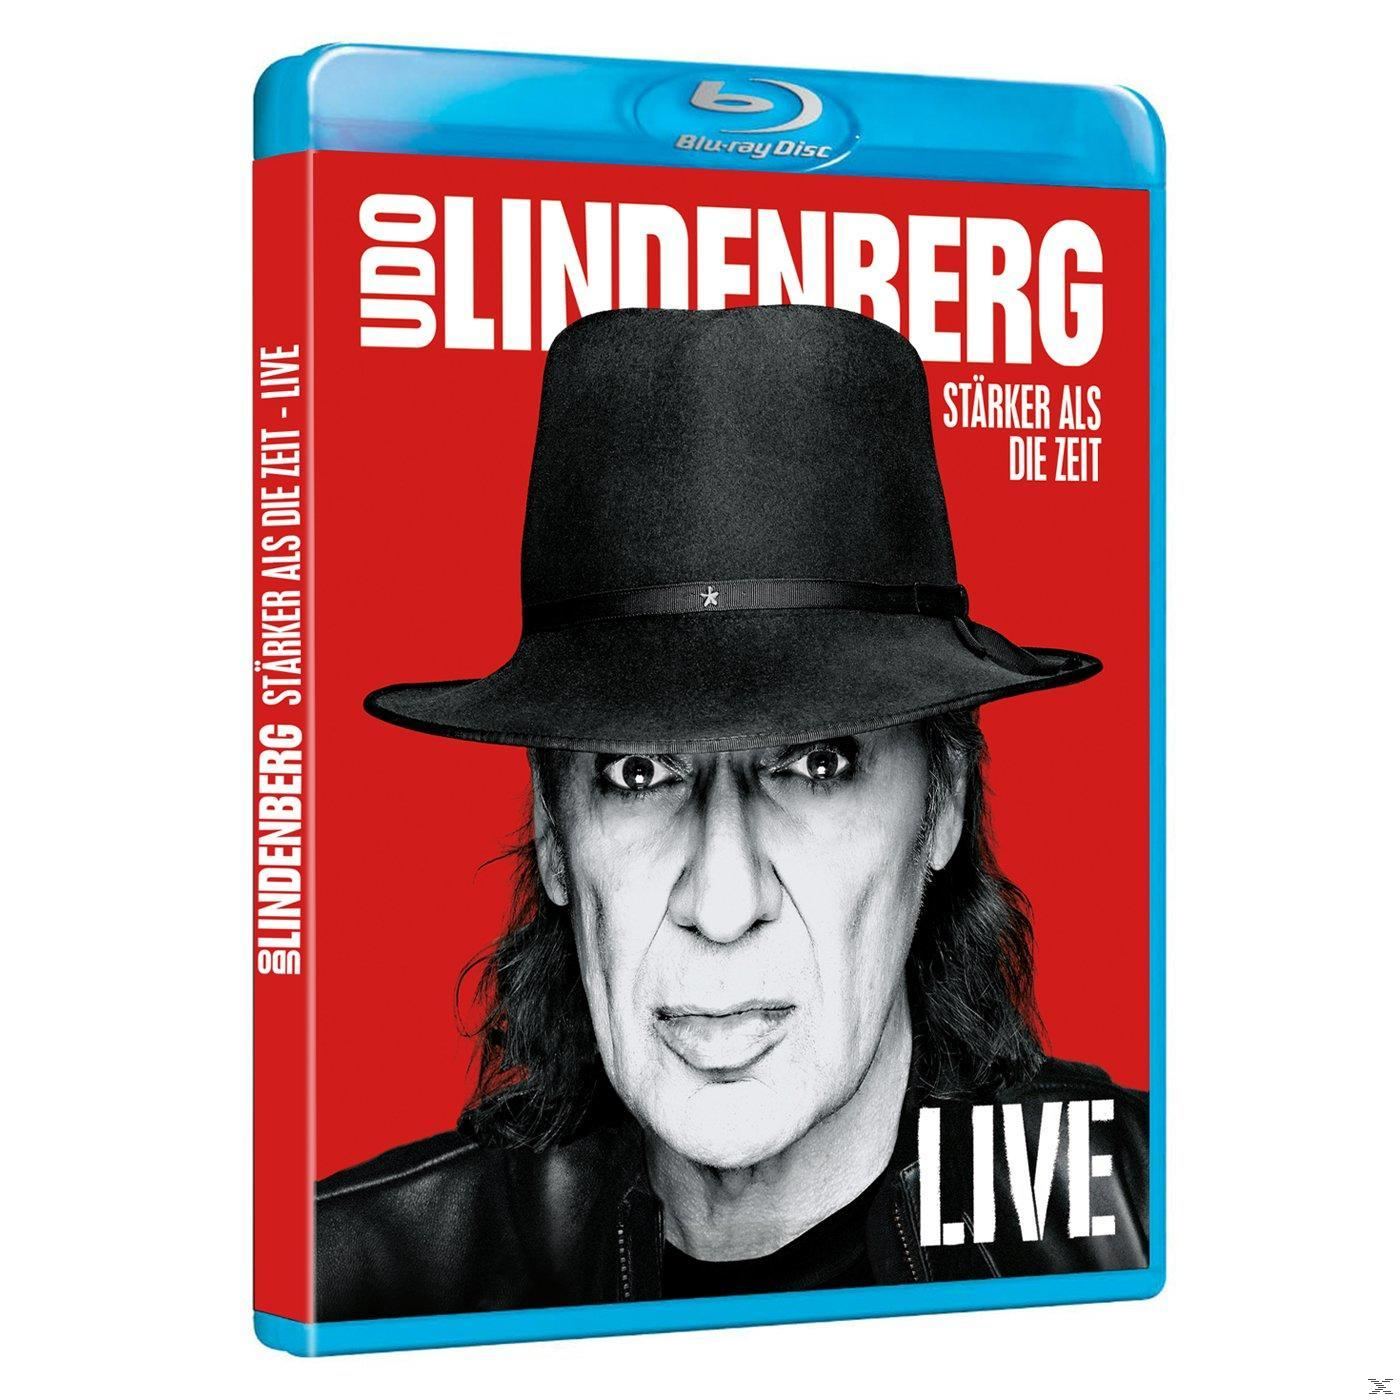 Udo Lindenberg BluRay) Zeit (2 die Stärker als LIVE - - - (Blu-ray)